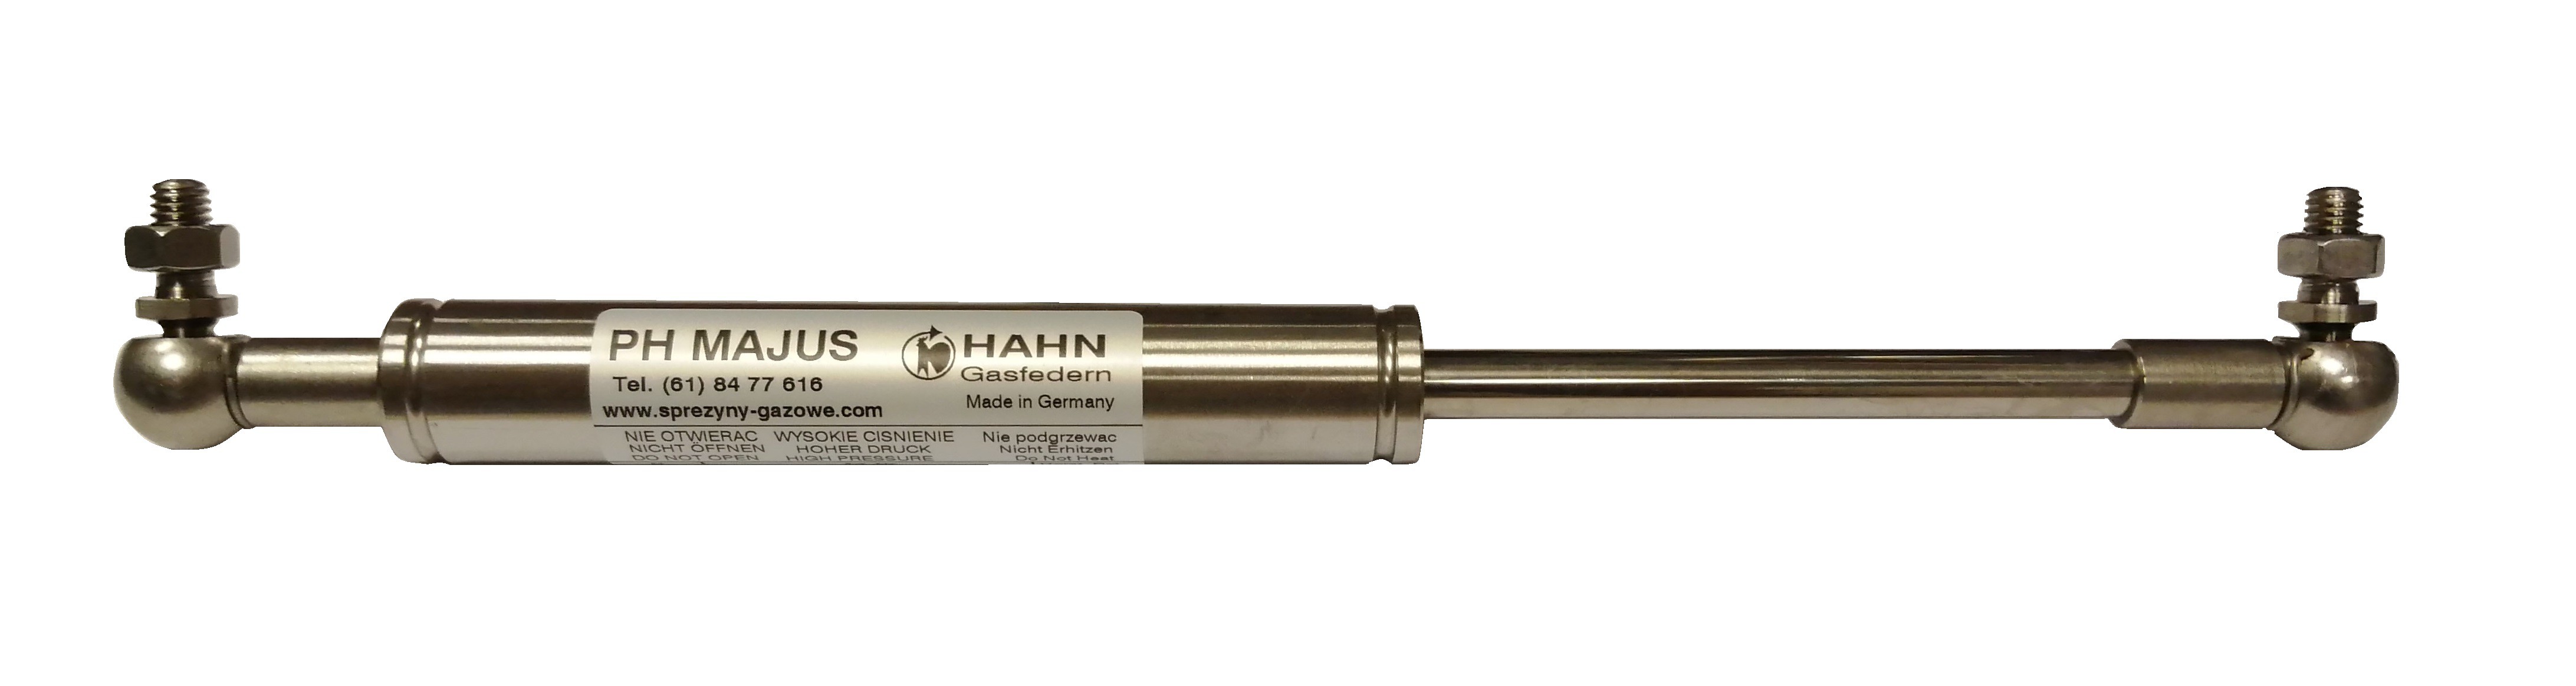 Sprężyna gazowa (HAHN Gasfedern) pchająca stal nierdzewna długość 302mm skok 100mm siła 100N-1200N